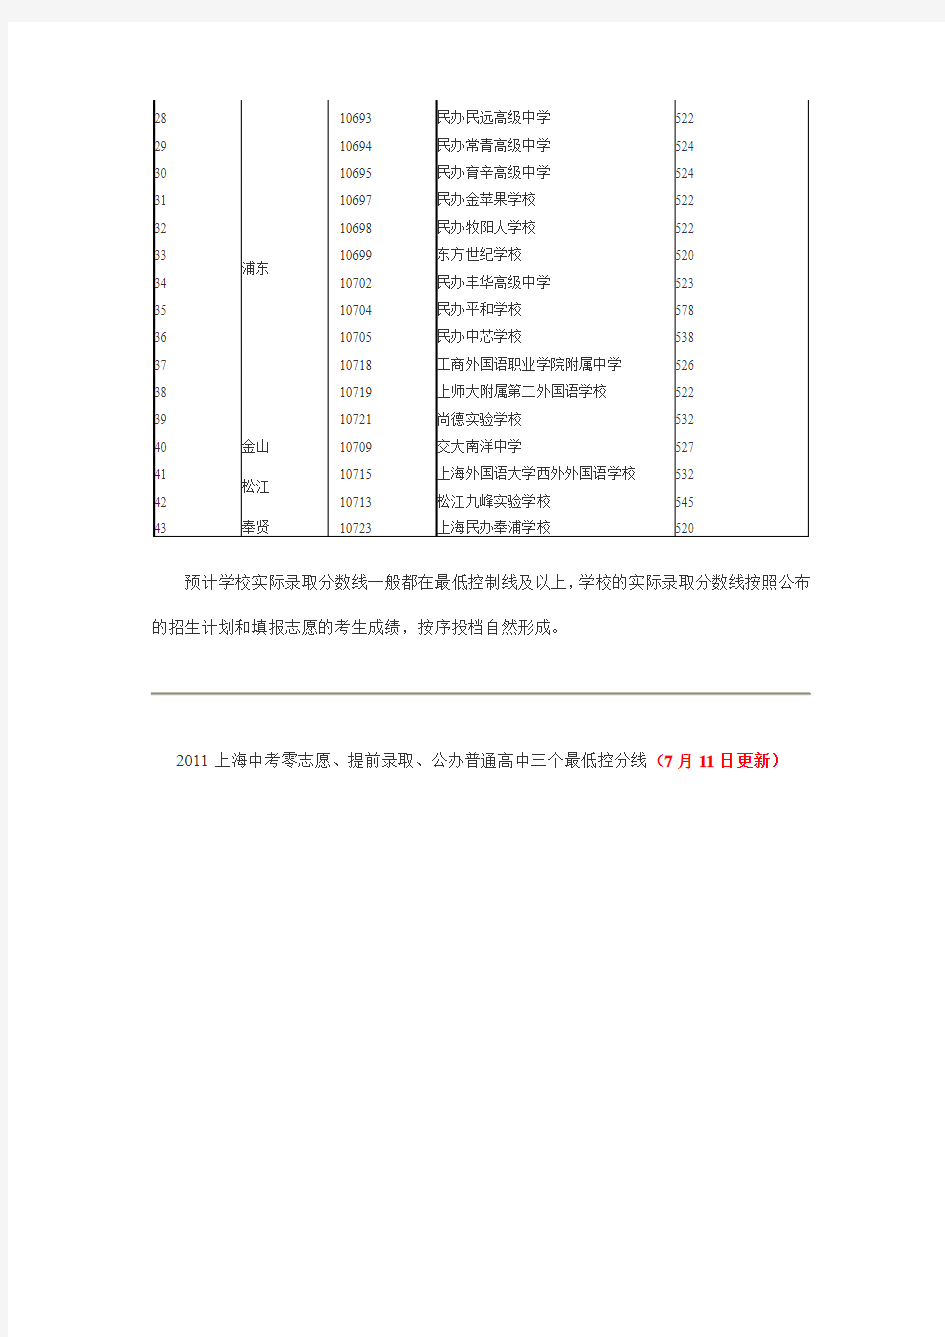 2011上海中考录取分数线公布